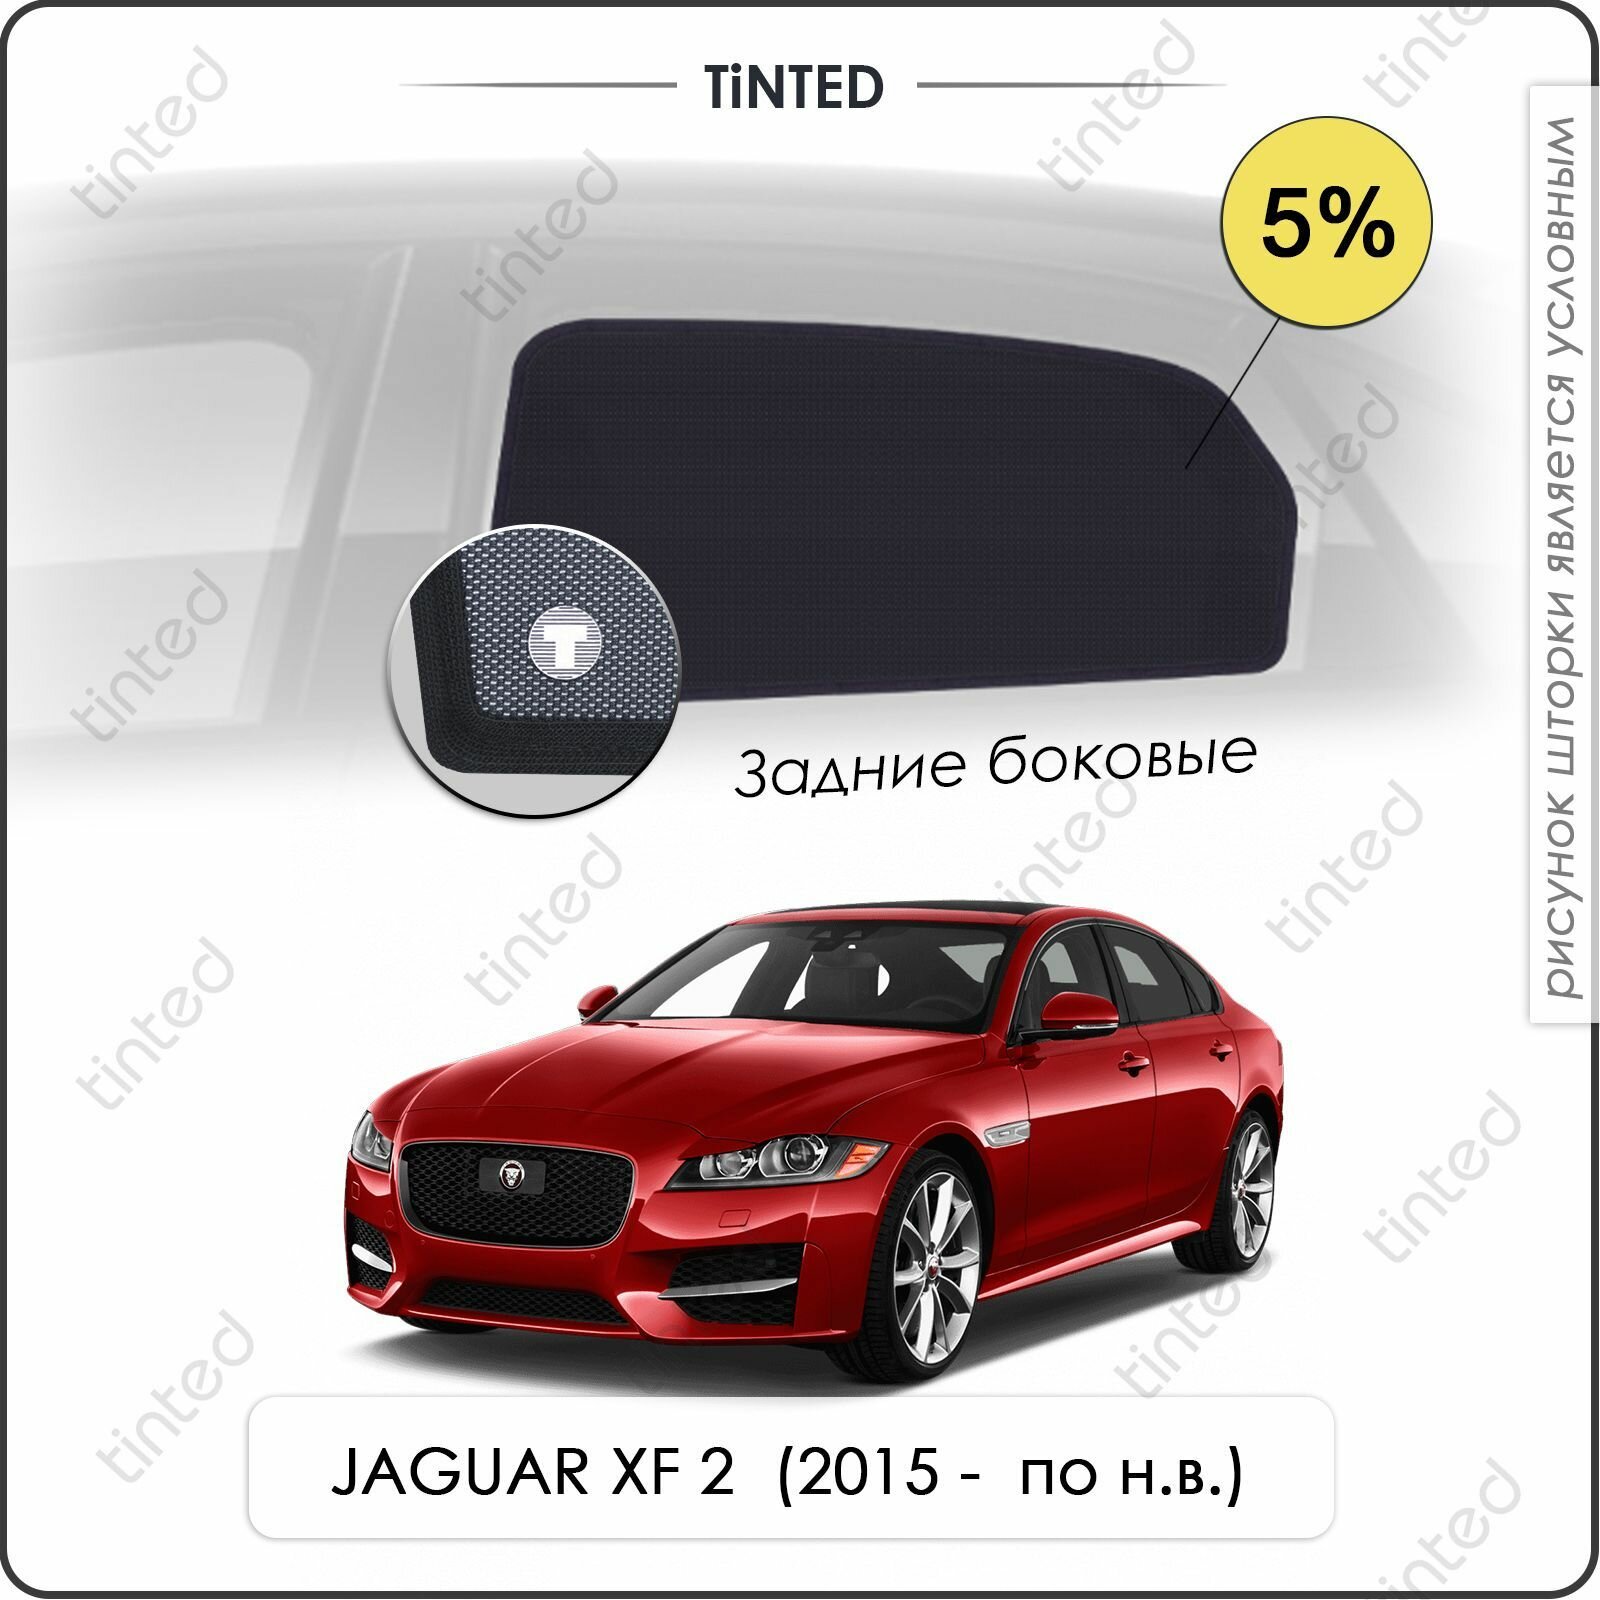 Шторки на автомобиль солнцезащитные JAGUAR XF 2 Седан 4дв. (2015 - по н. в.) на задние двери 5%, сетки от солнца в машину ягуар ХФ, Каркасные автошторки Premium